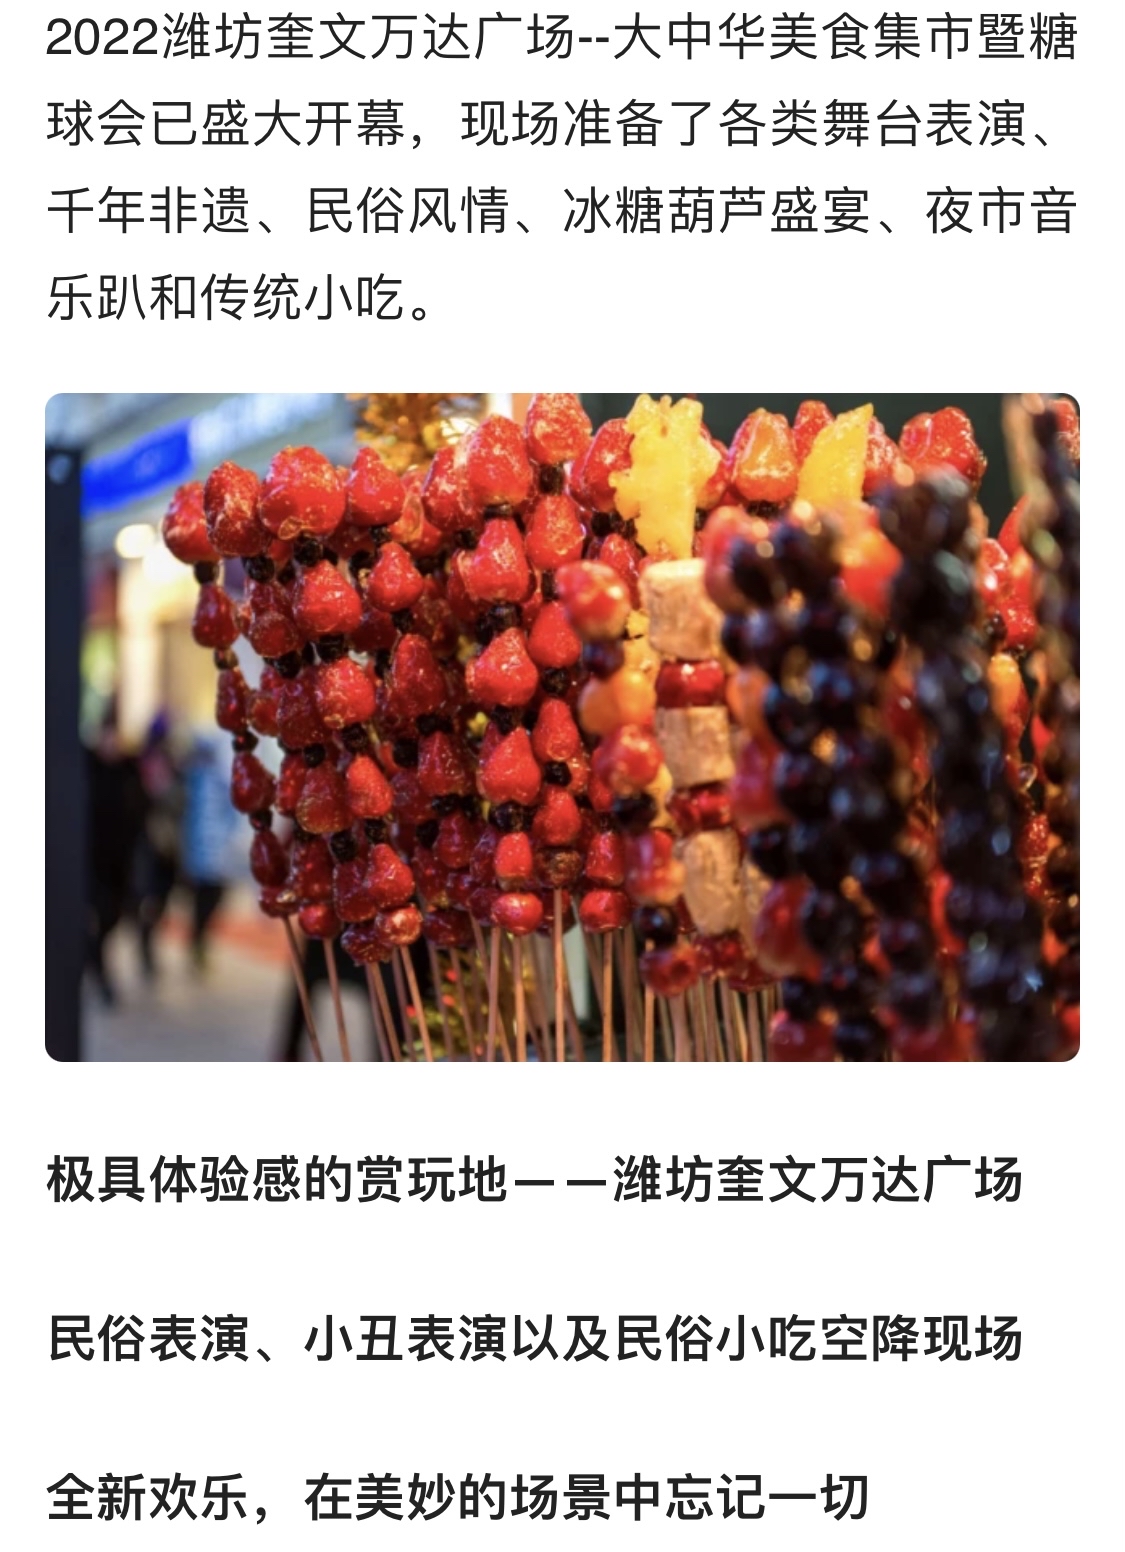 2022潍坊奎文万达广场——大中华美食集市暨糖球会盛大开幕